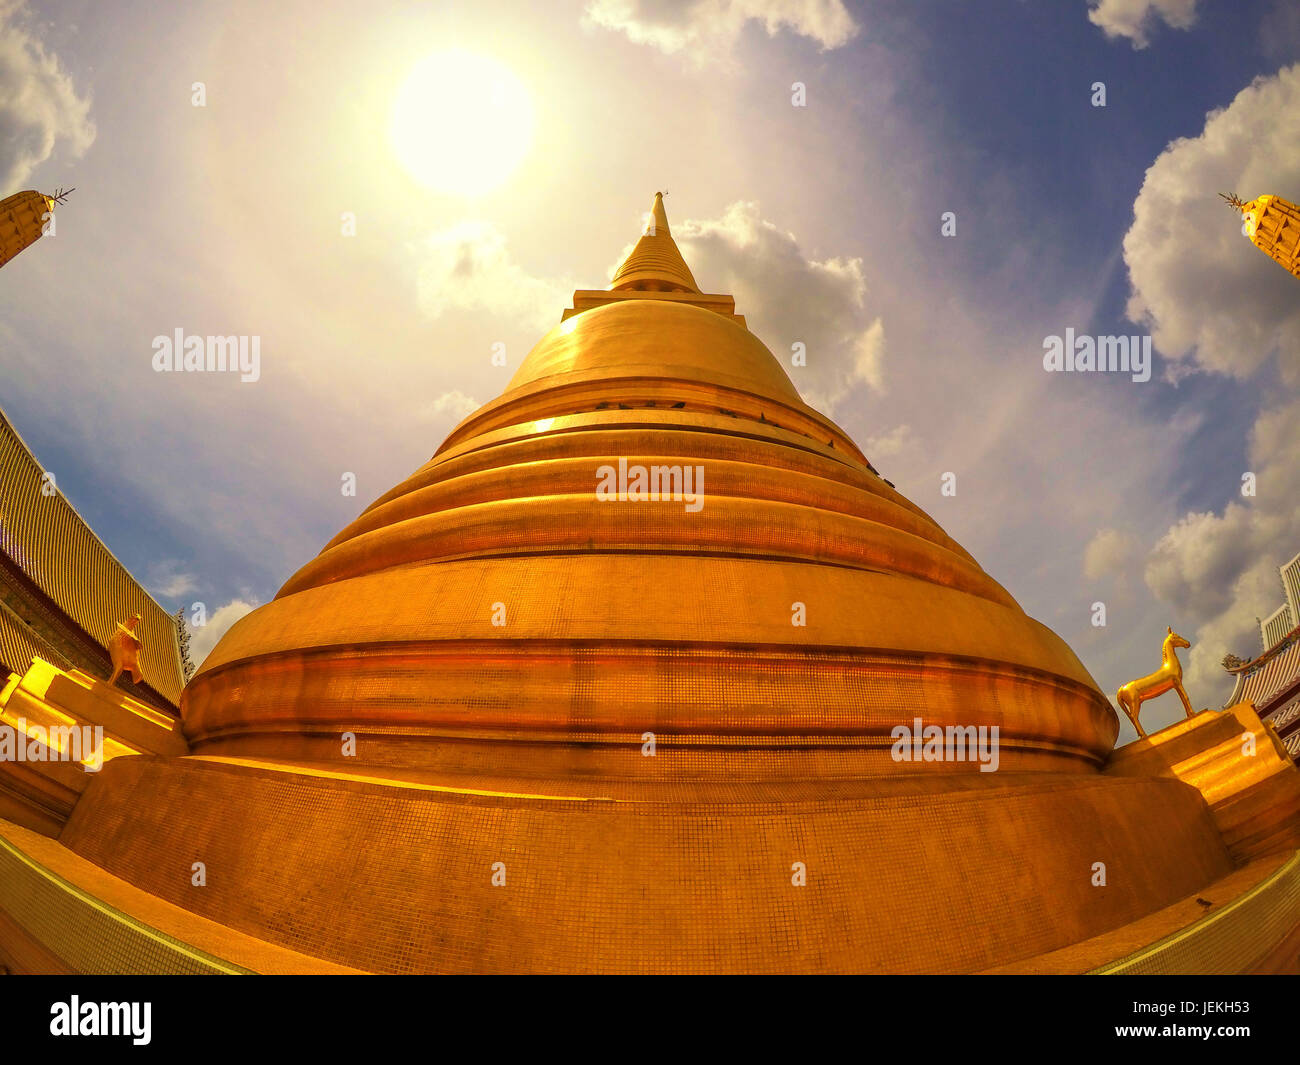 Dôme doré d'un temple, Phra Nakhon District, Thaïlande Banque D'Images